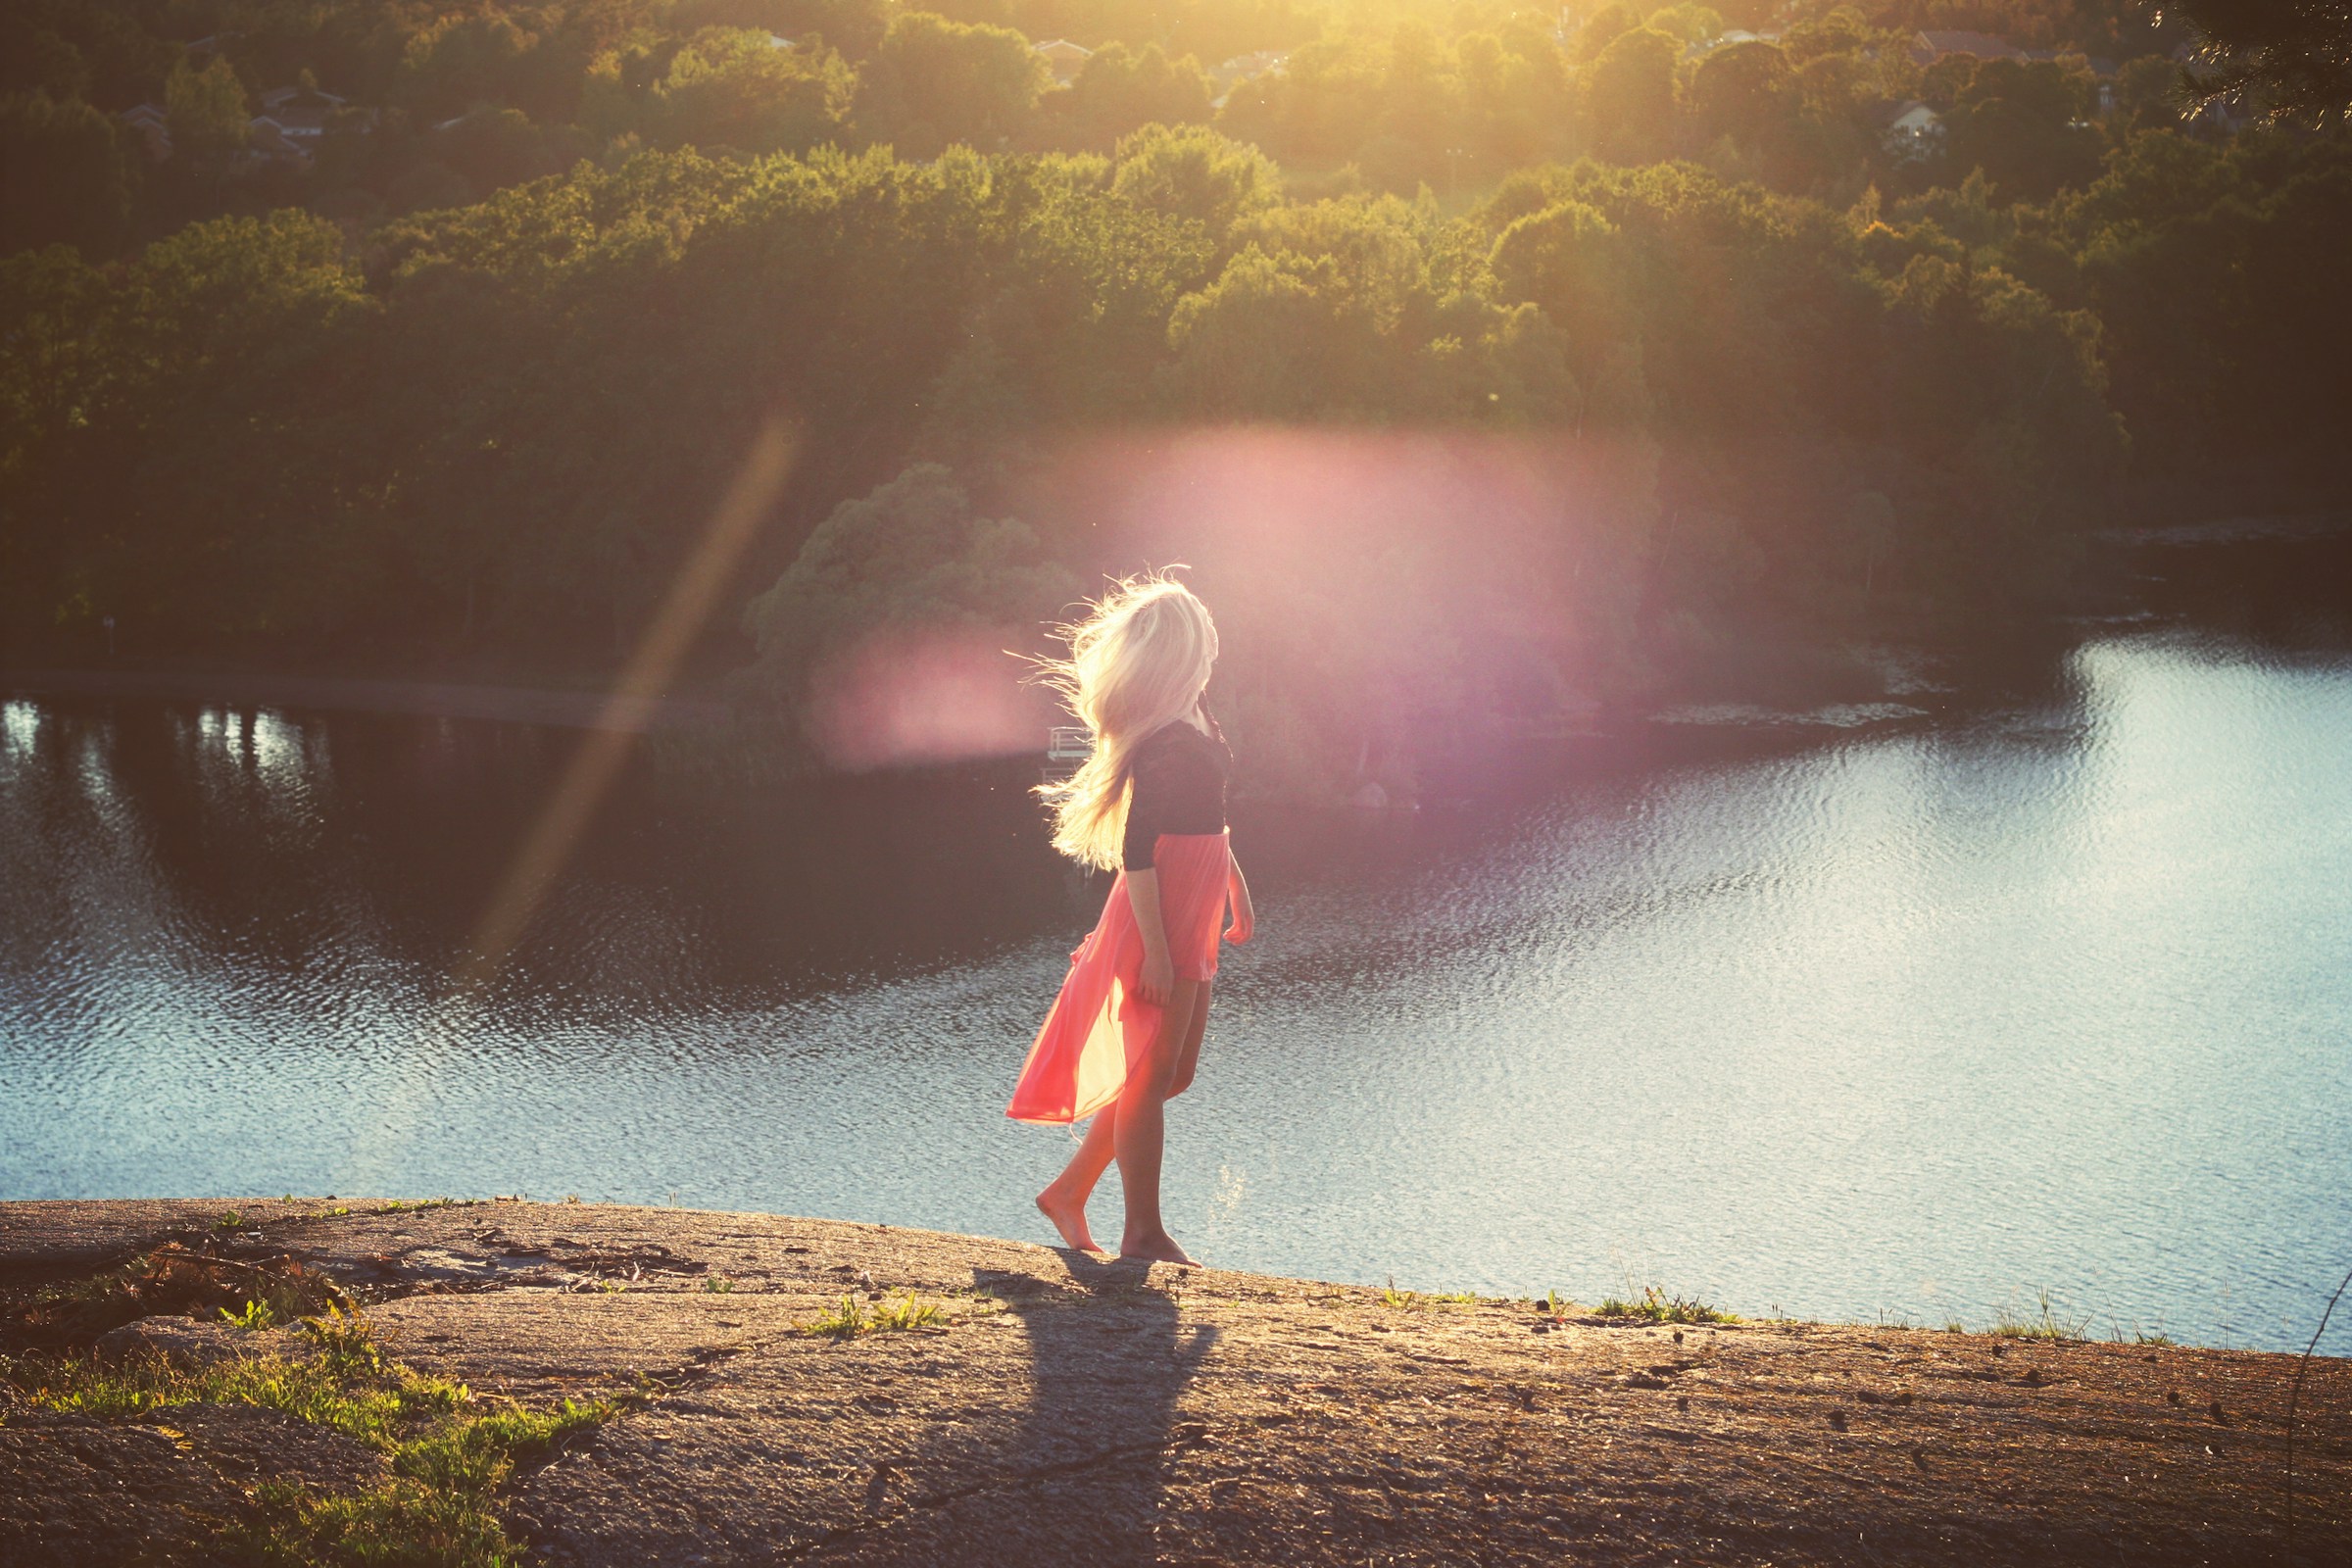 Woman walking through nature. | Source: Unsplash